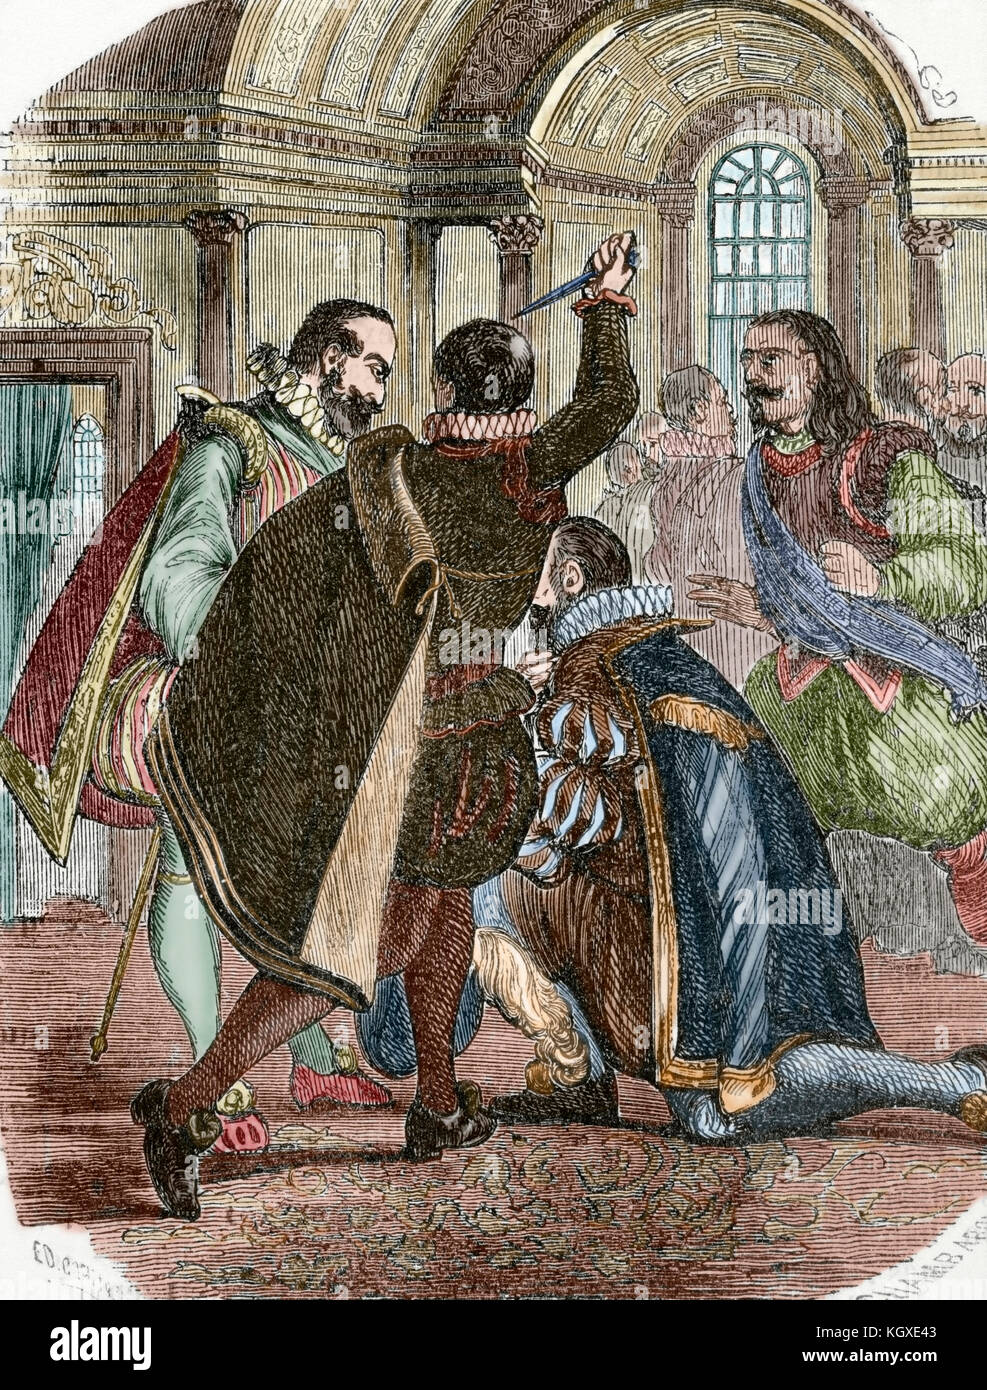 Versuch König Heinrich IV. von Frankreich zu ermorden (1553-1610) von Jean Chatel (1575-1594) im Dezember 1594. Kupferstich von chamb Aron, 1851. Gefärbt. Stockfoto